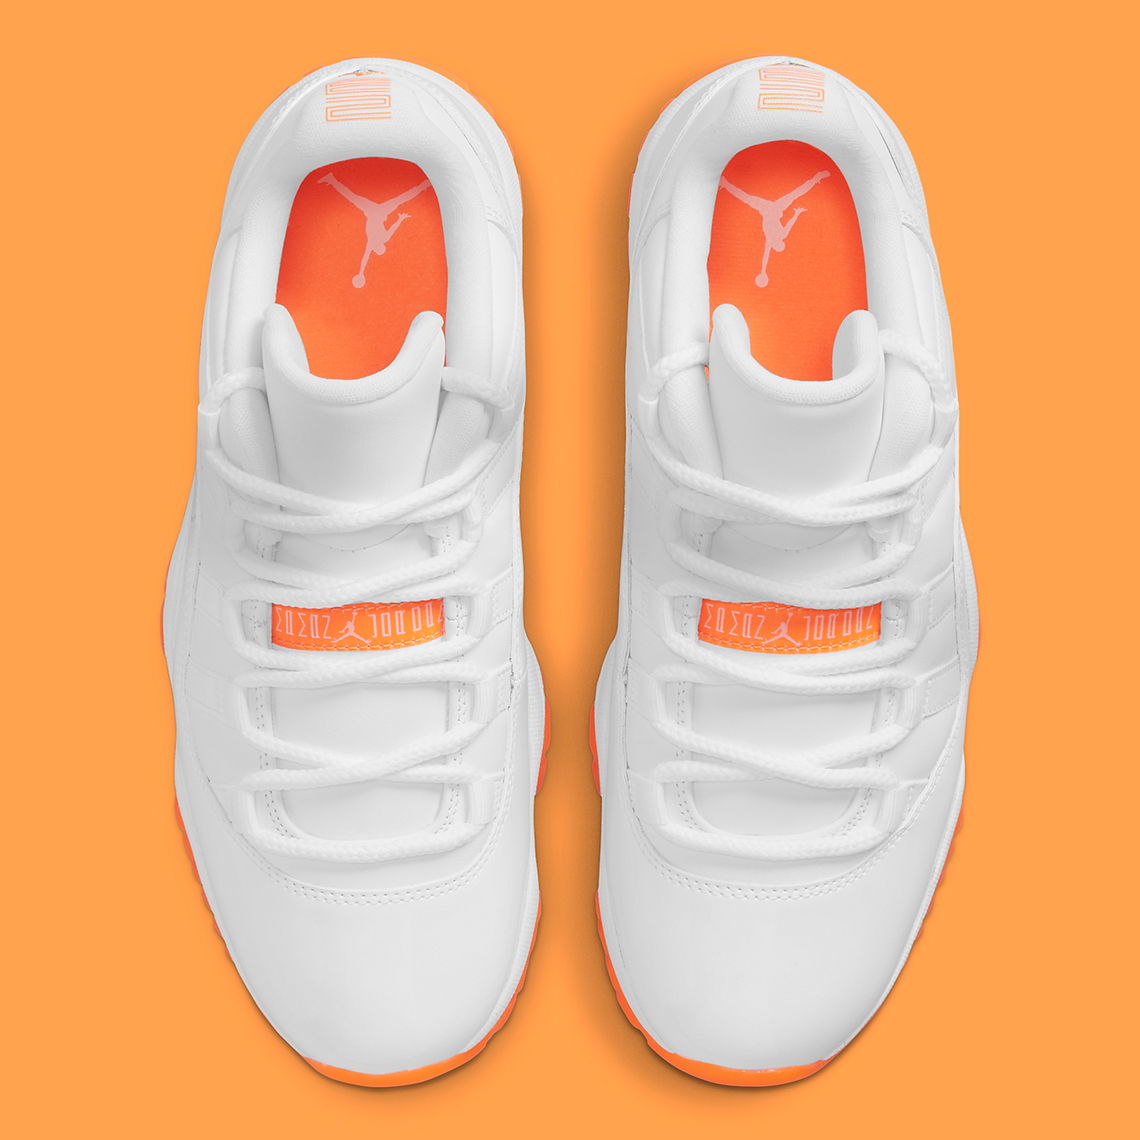 white and orange jordan 11